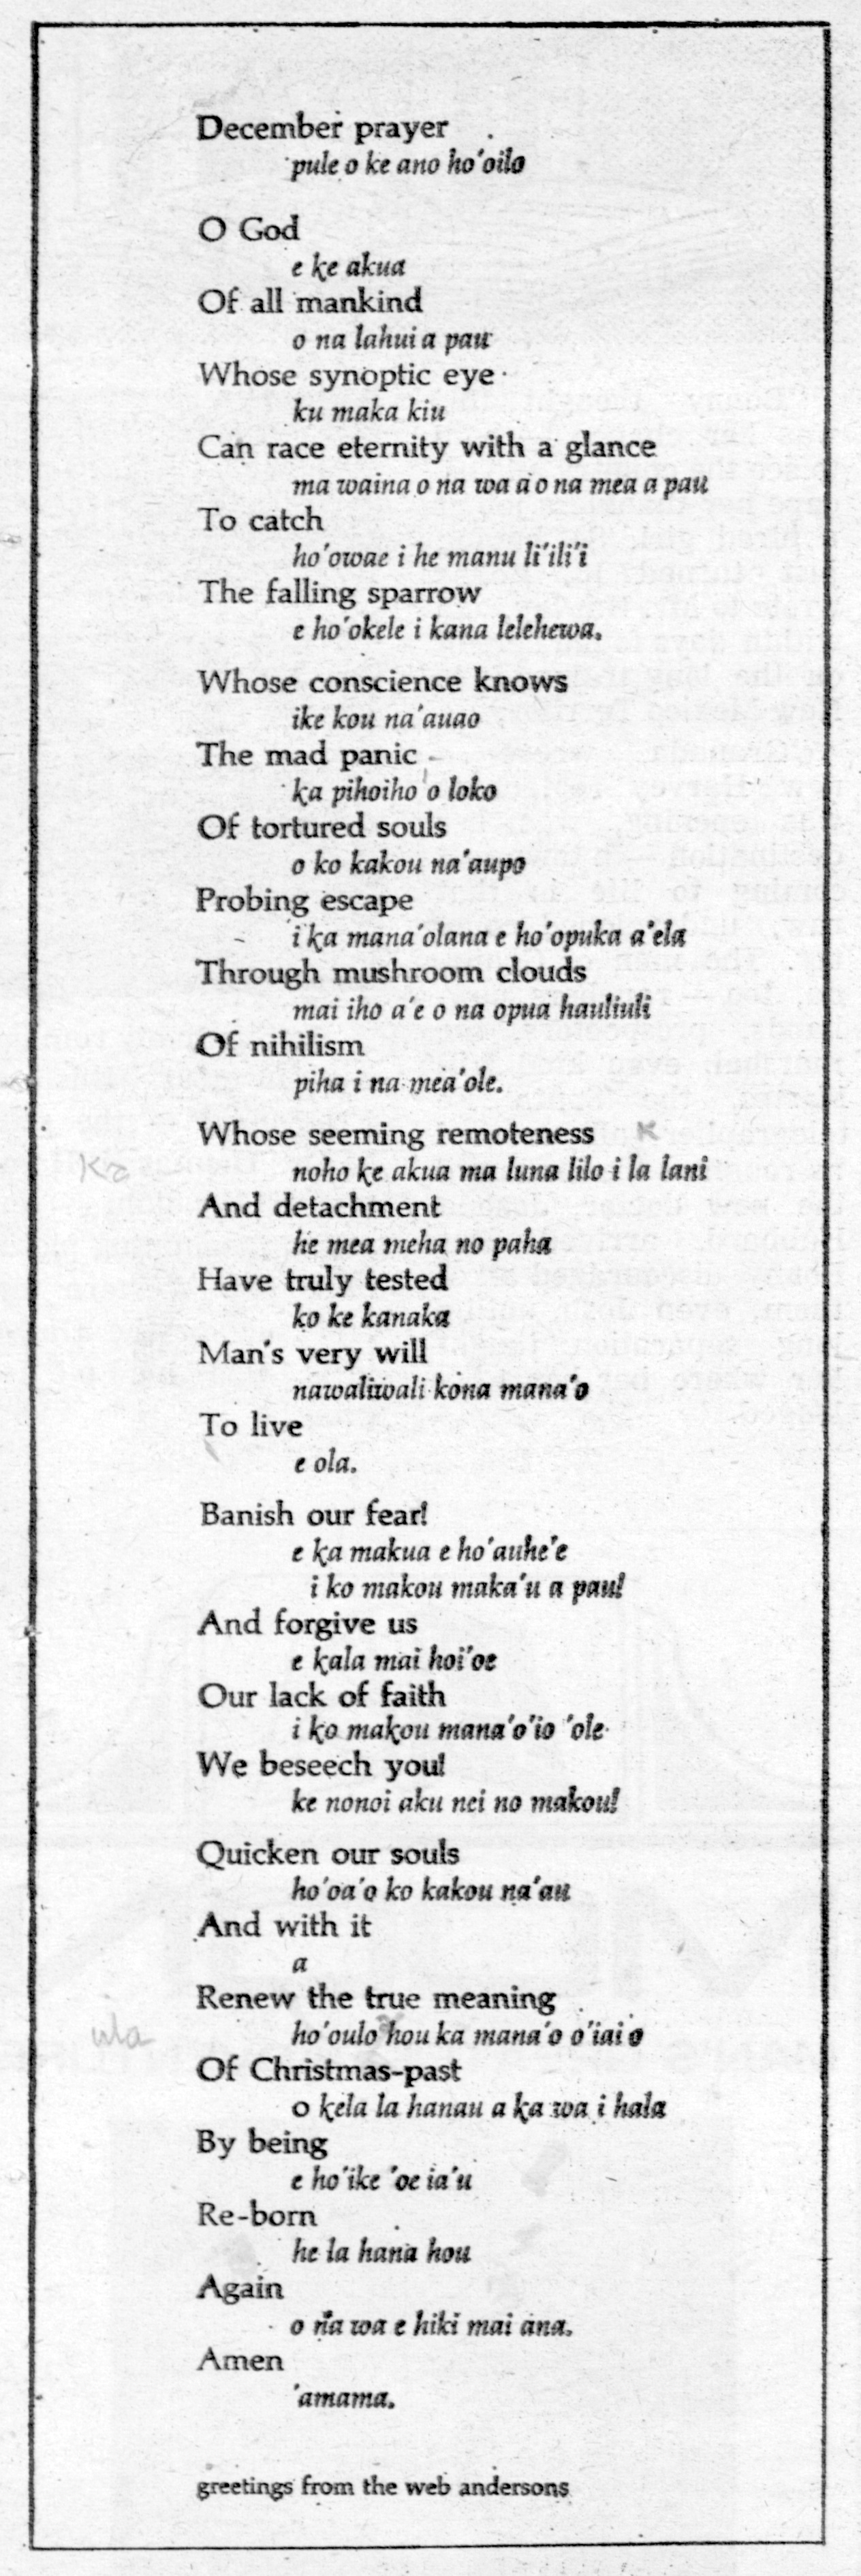 Scanned image of December prayer poem.